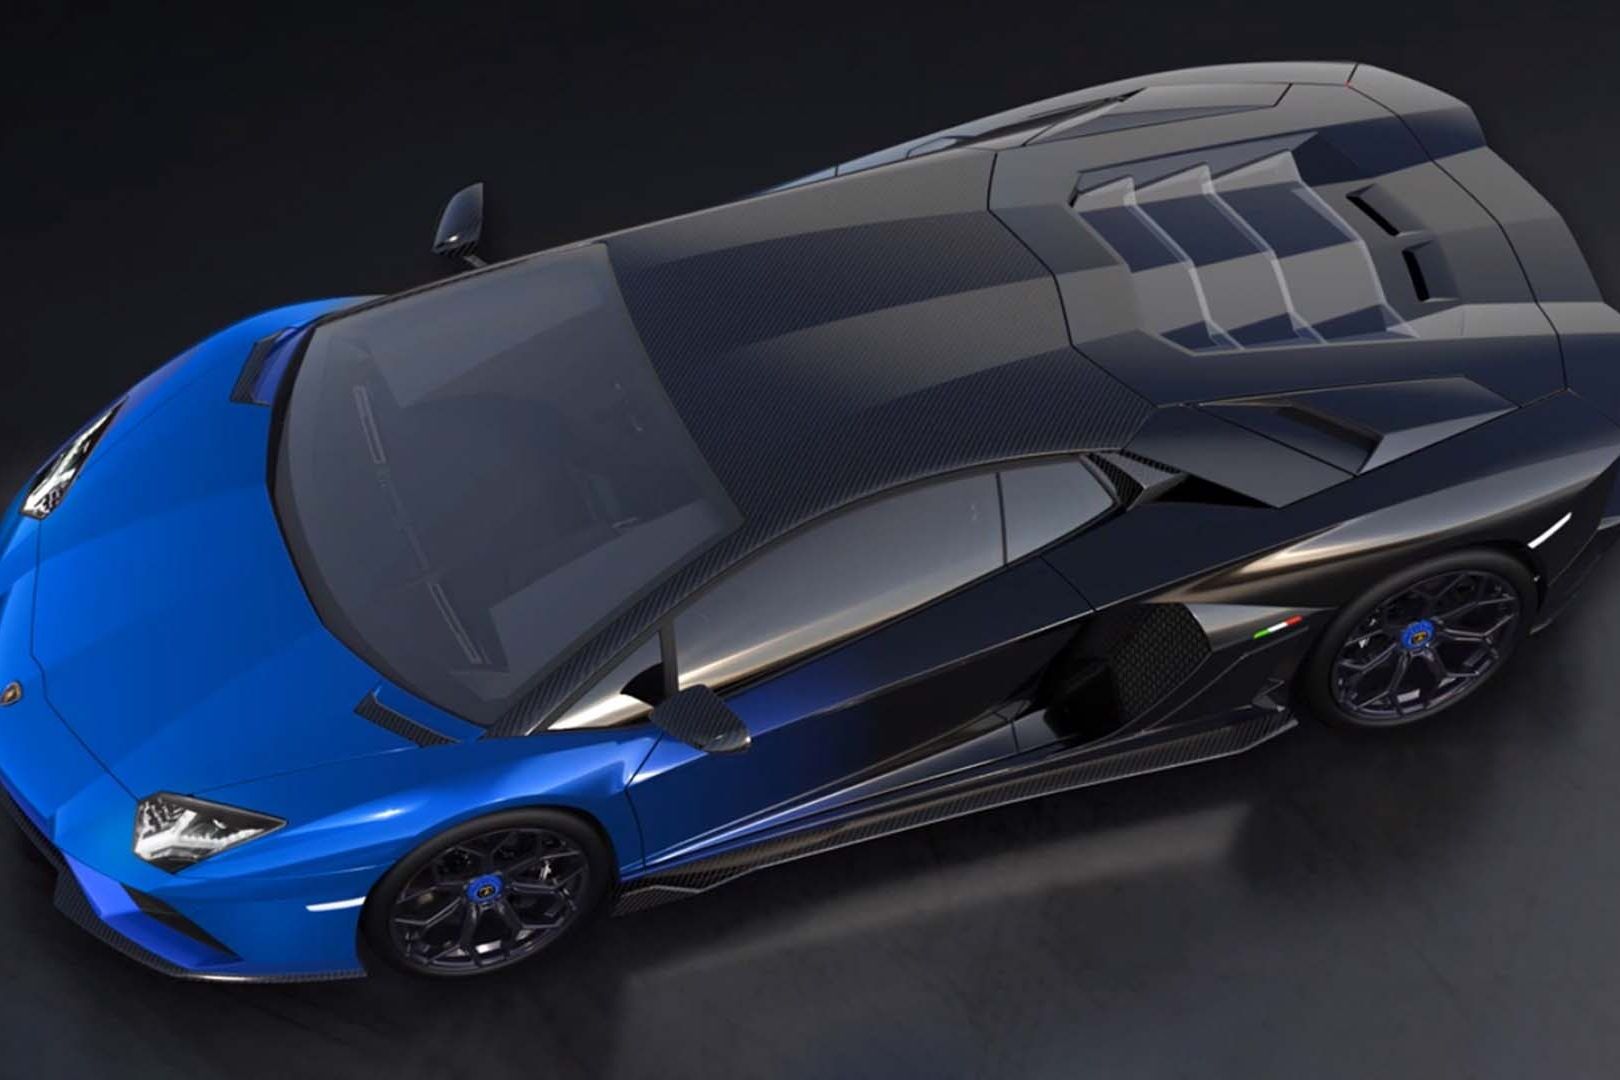 এক্সক্লুসিভ Lamborghini Aventador LP 780-4 Ultimae Coupé একটি NFT 1.1 এবং তার উপরে নিলামের জন্য পেয়ার করা হবে